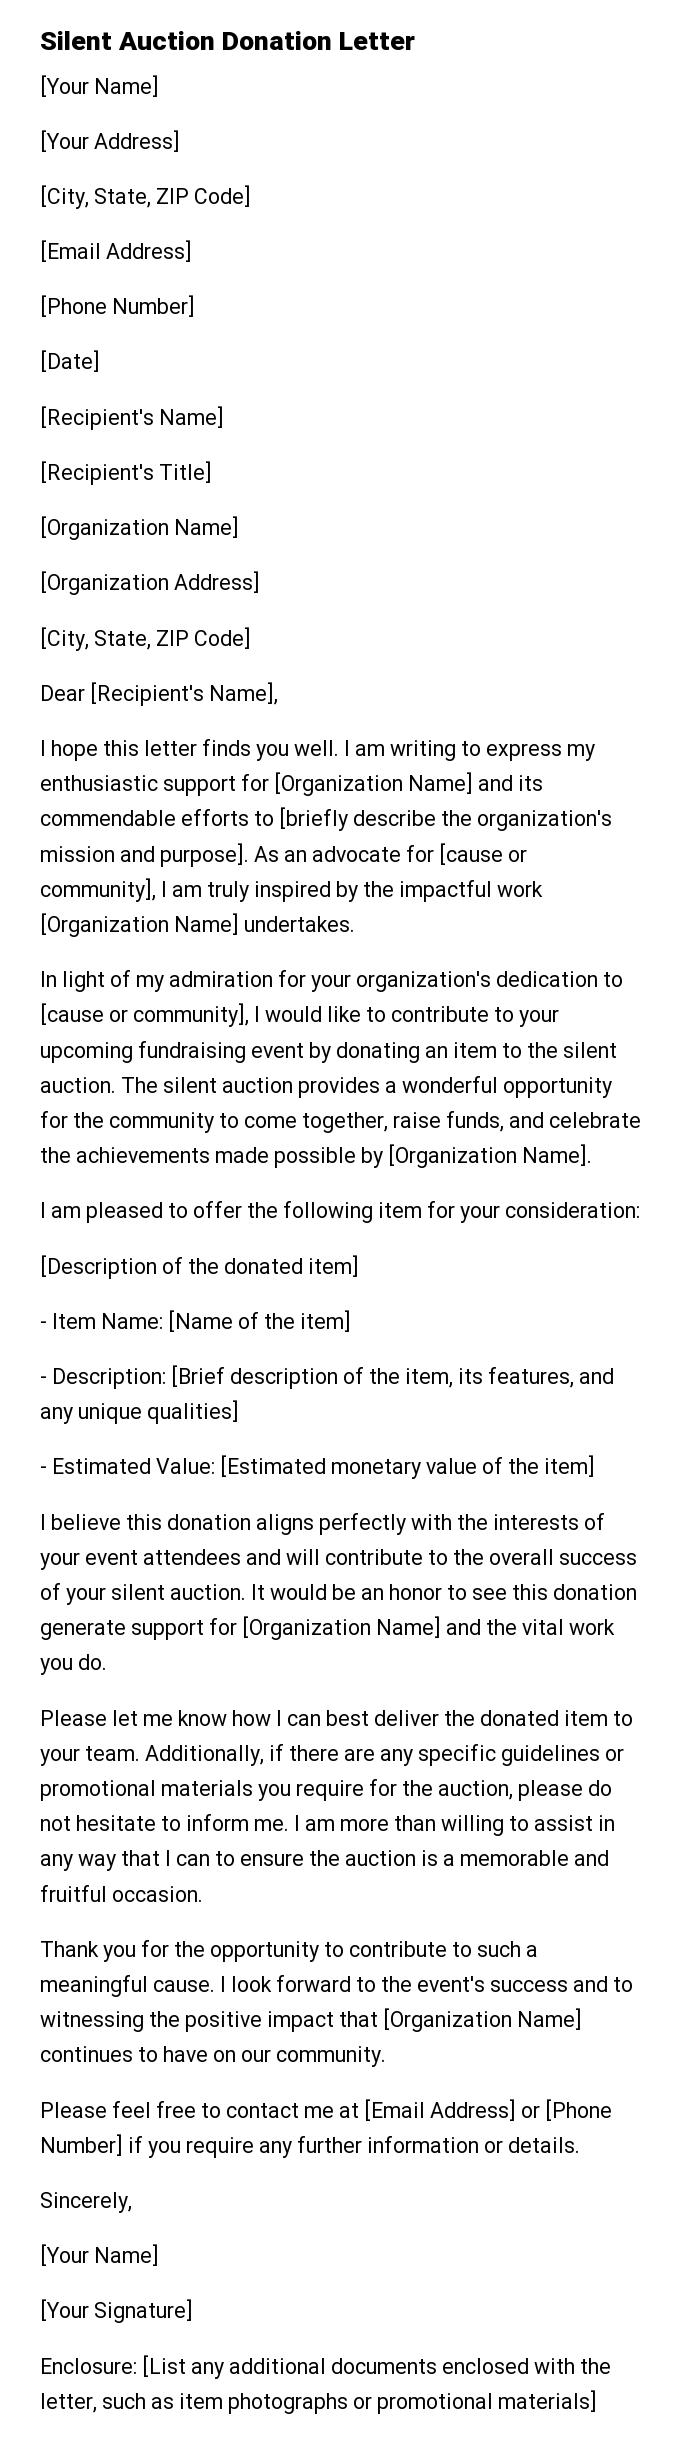 Silent Auction Donation Letter